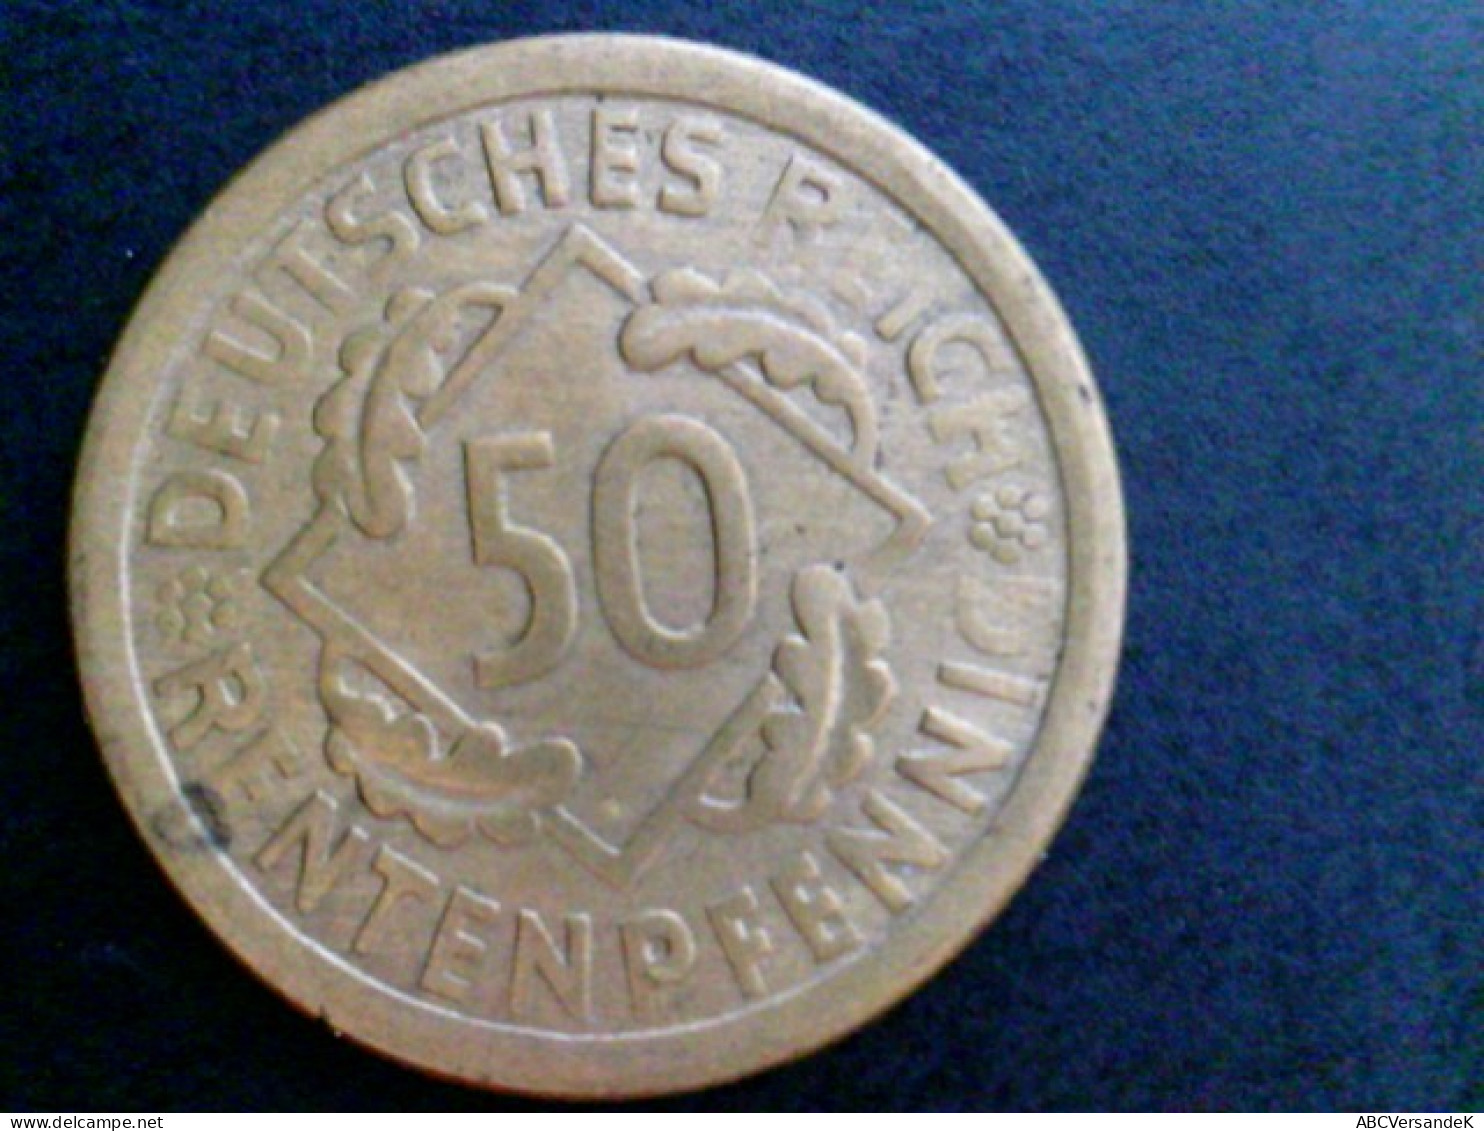 Münzen/ Medaillen: 1 Münze, 1924 E Deutsches Reich, 50 Rentenpfennig, Sehr Selten - Numismatik